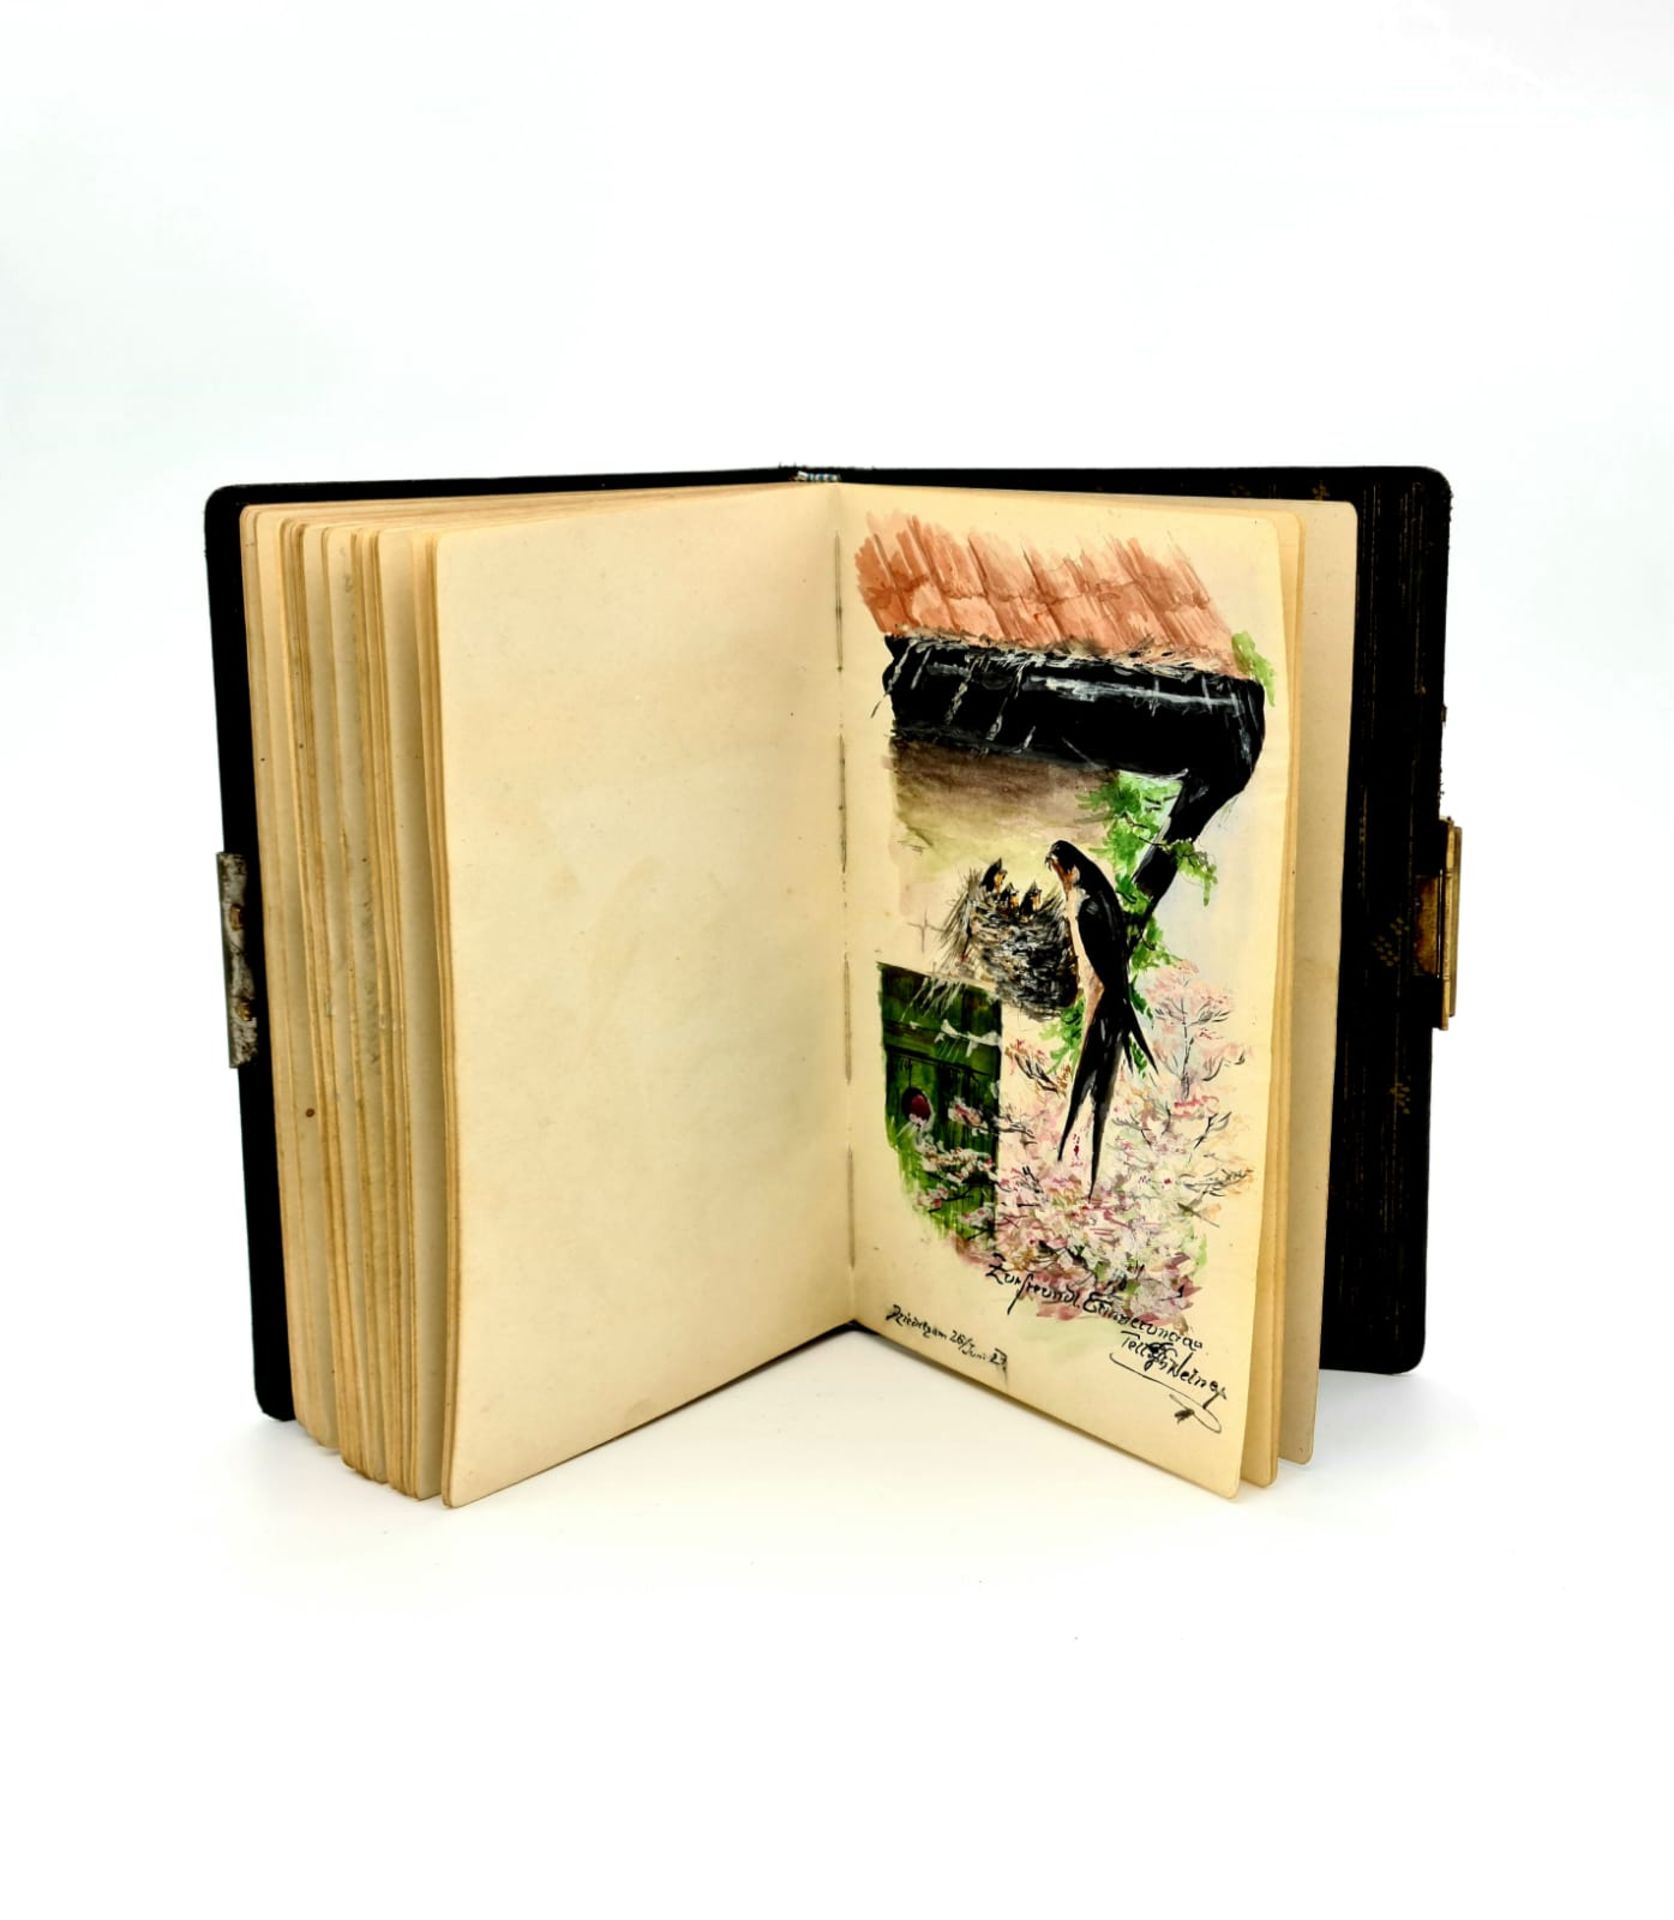 Poesiealbum aus den 1920er Jahren mit mehreren Aquarellen und Gedichten, Größe: ca. 19x13cm, - Image 4 of 6